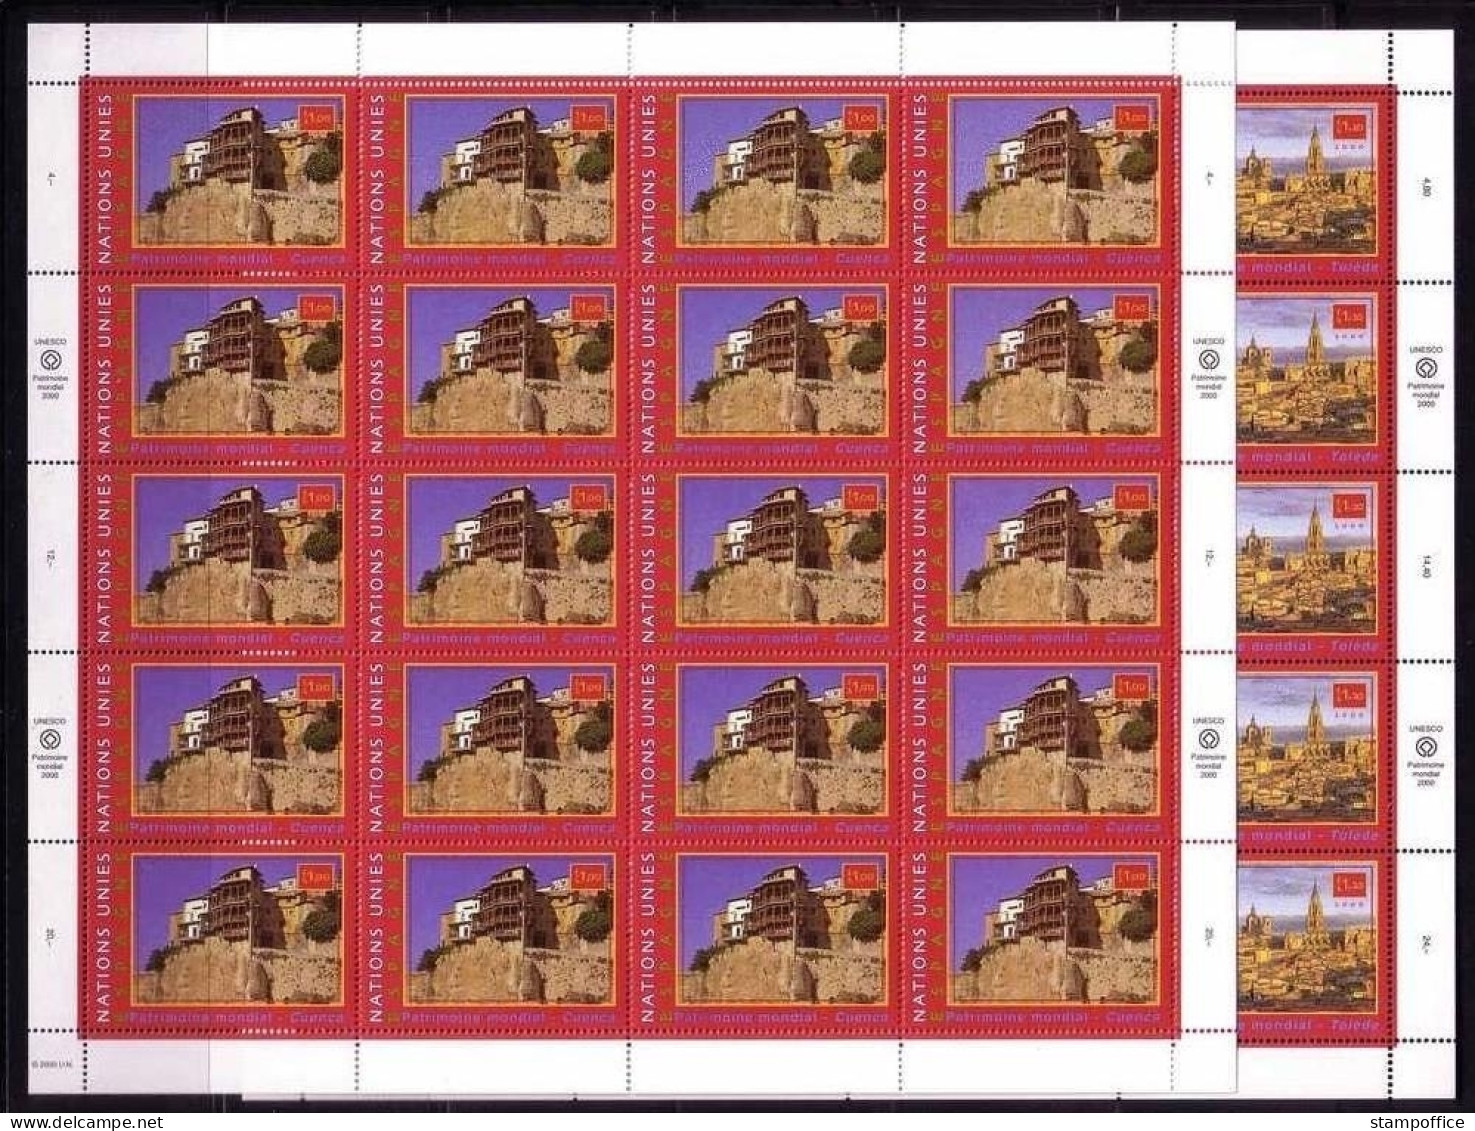 UNO GENF MI-NR. 399-400 POSTFRISCH(MINT) KLEINBOGENSATZ UNESCO-WELTERBE 2000 SPANIEN - Blocks & Sheetlets